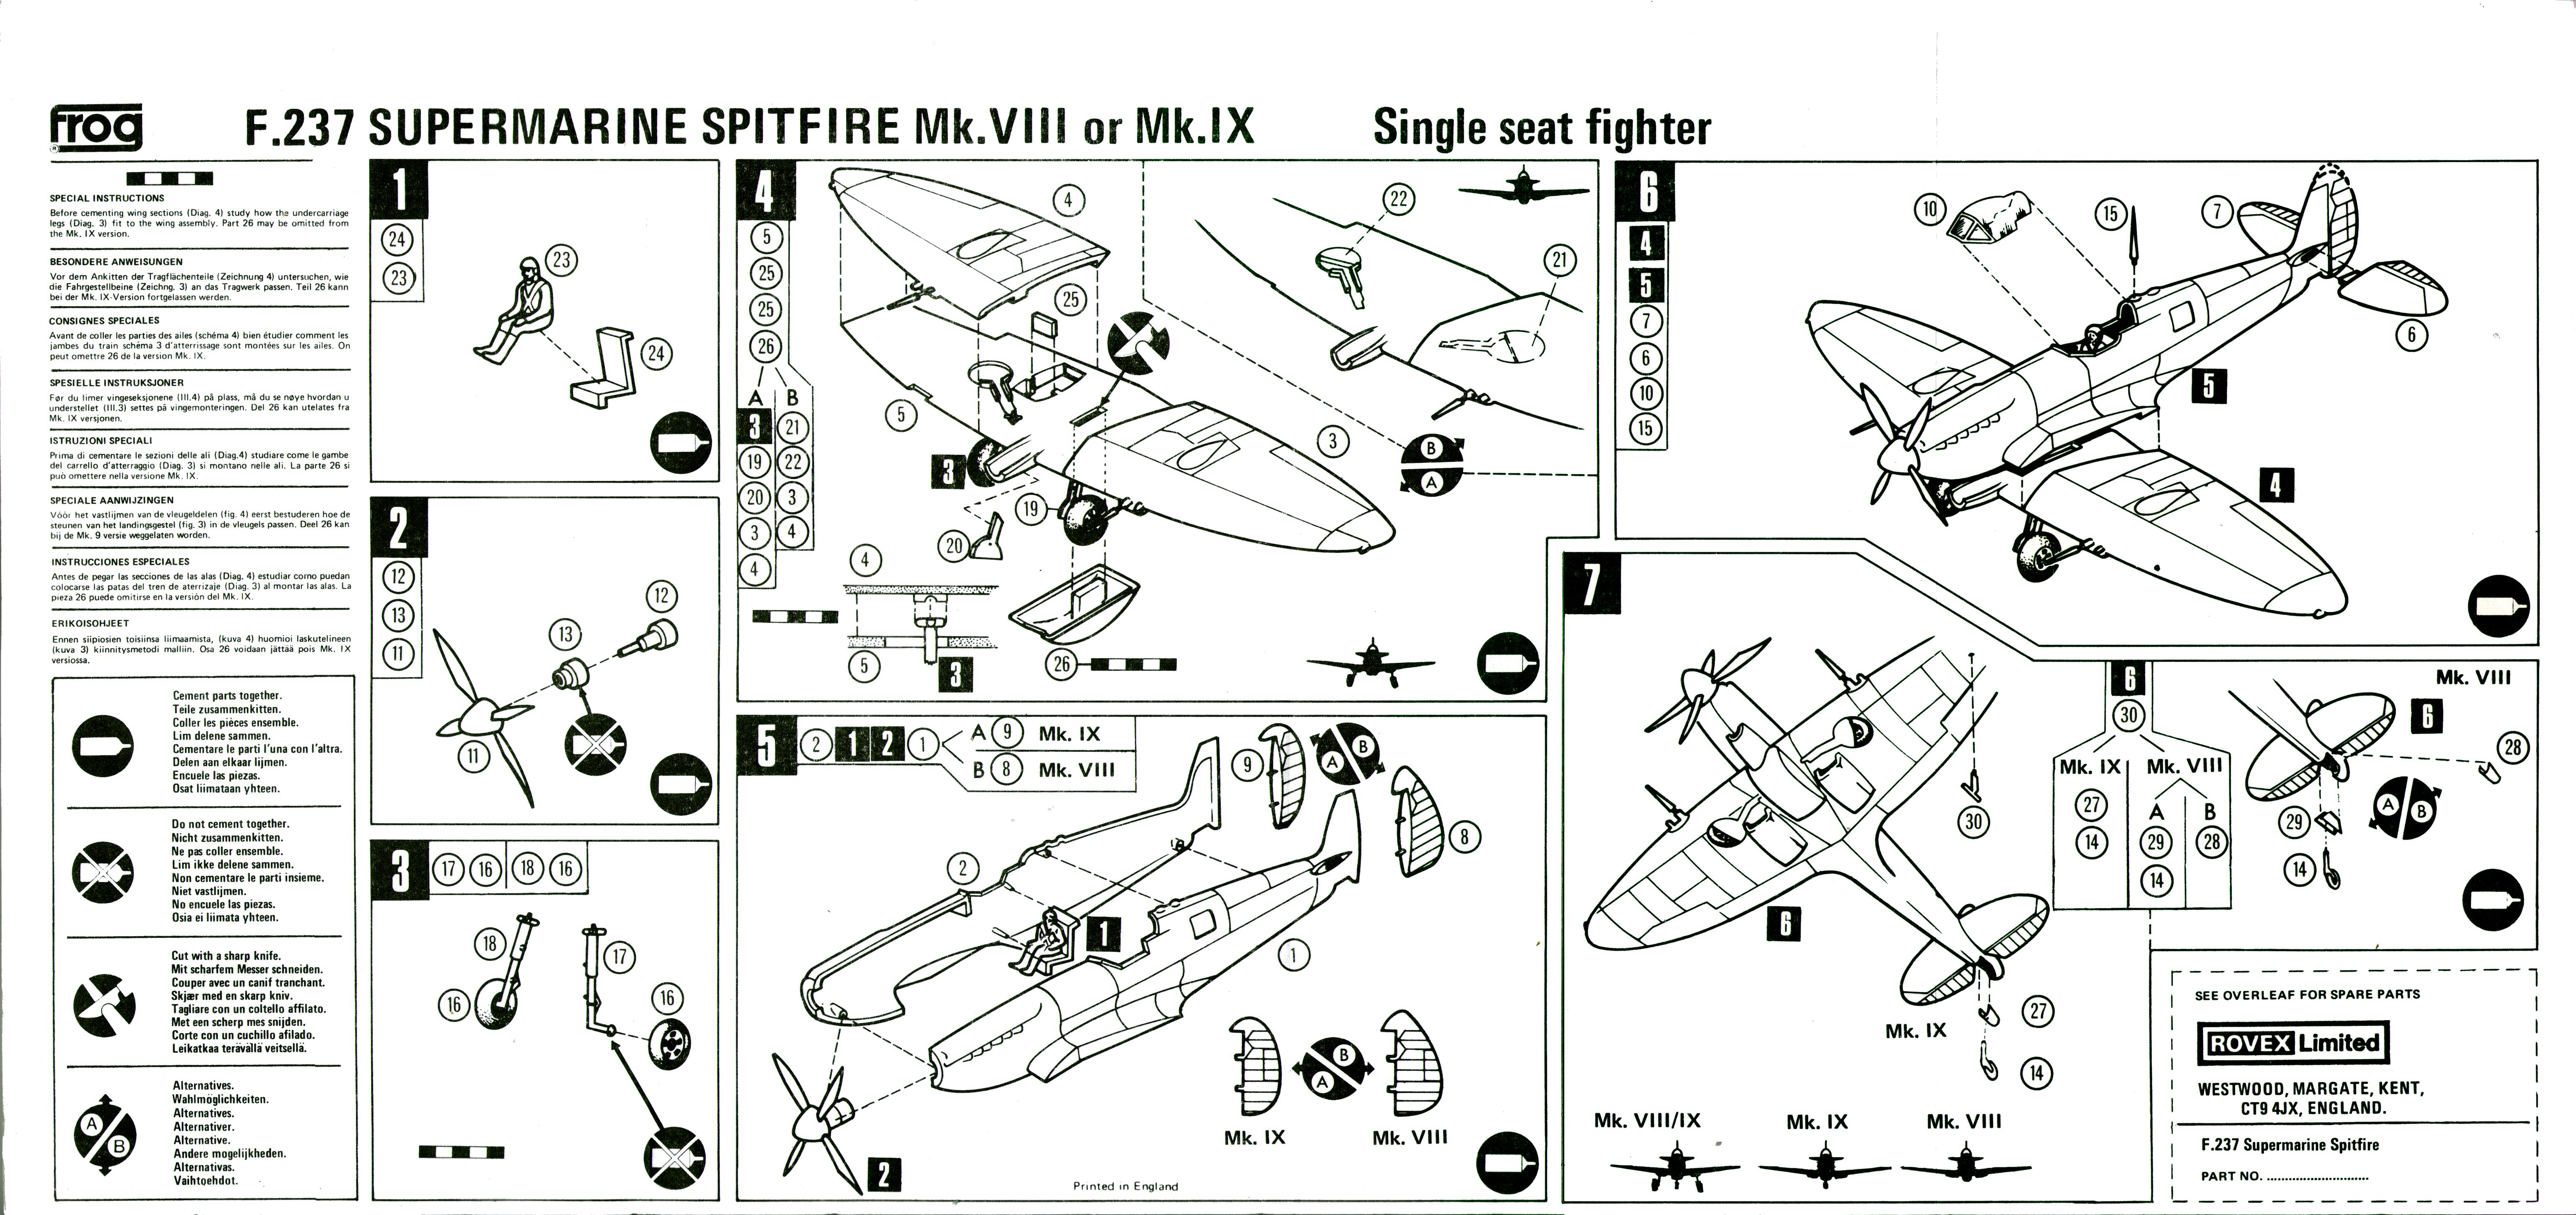 Инструкция по сборке FROG Blue Series F237 Supermarine Spitfire Mk.8/9, Rovex Models and Hobbies Ltd, 1974